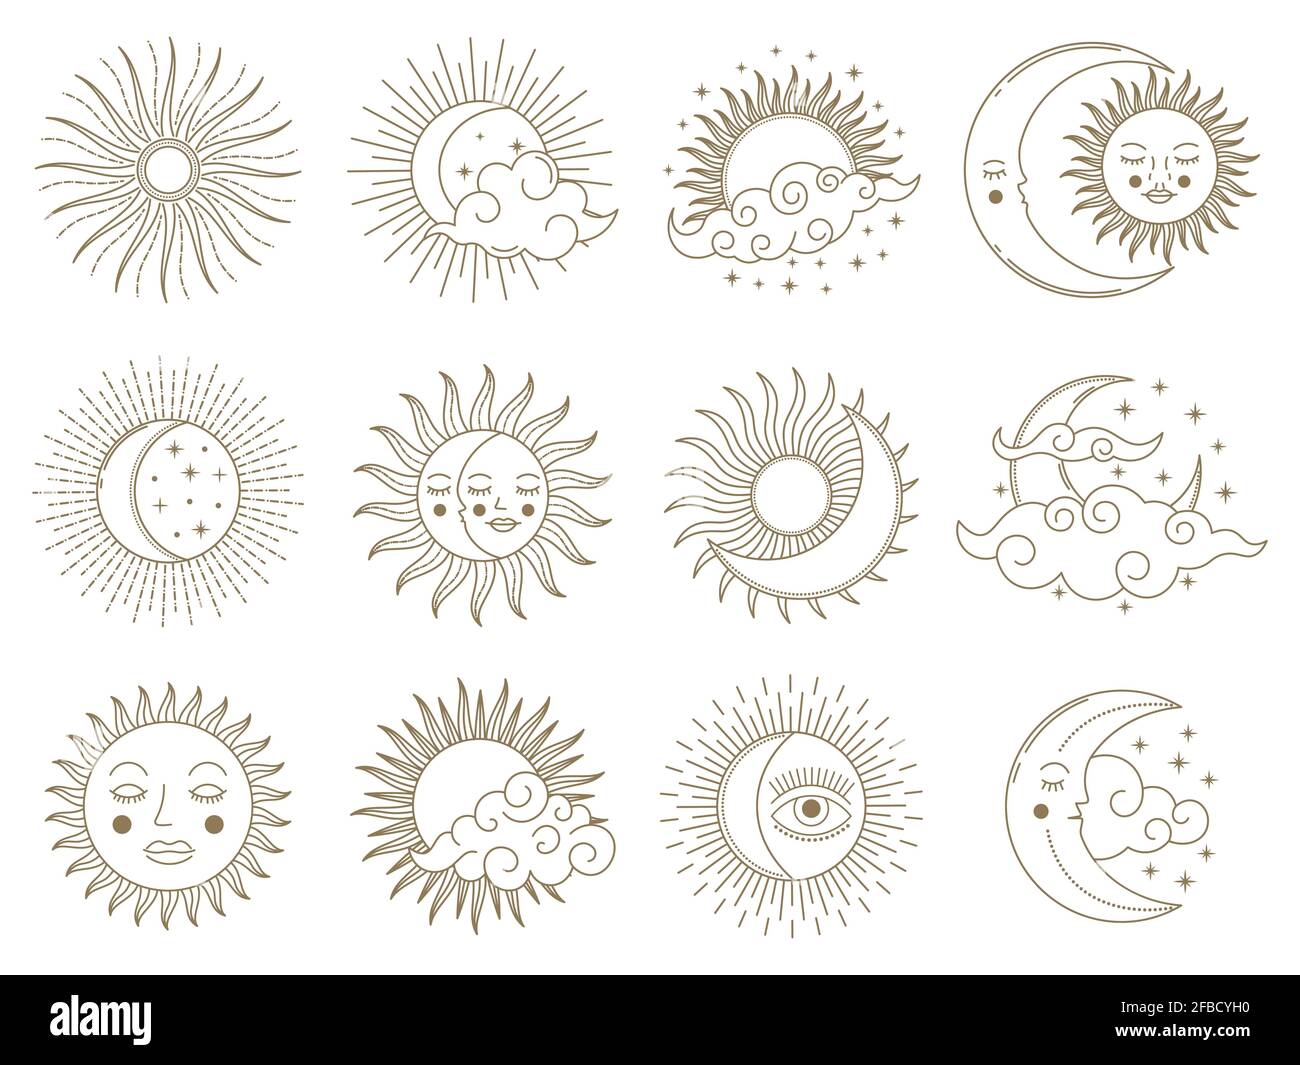 Luna magica e sole. Elementi astrologici del boho d'oro, sole, luna, stelle e nuvole insieme di illustrazioni vettoriali. Simboli mistici di astrologia giorno e notte Illustrazione Vettoriale